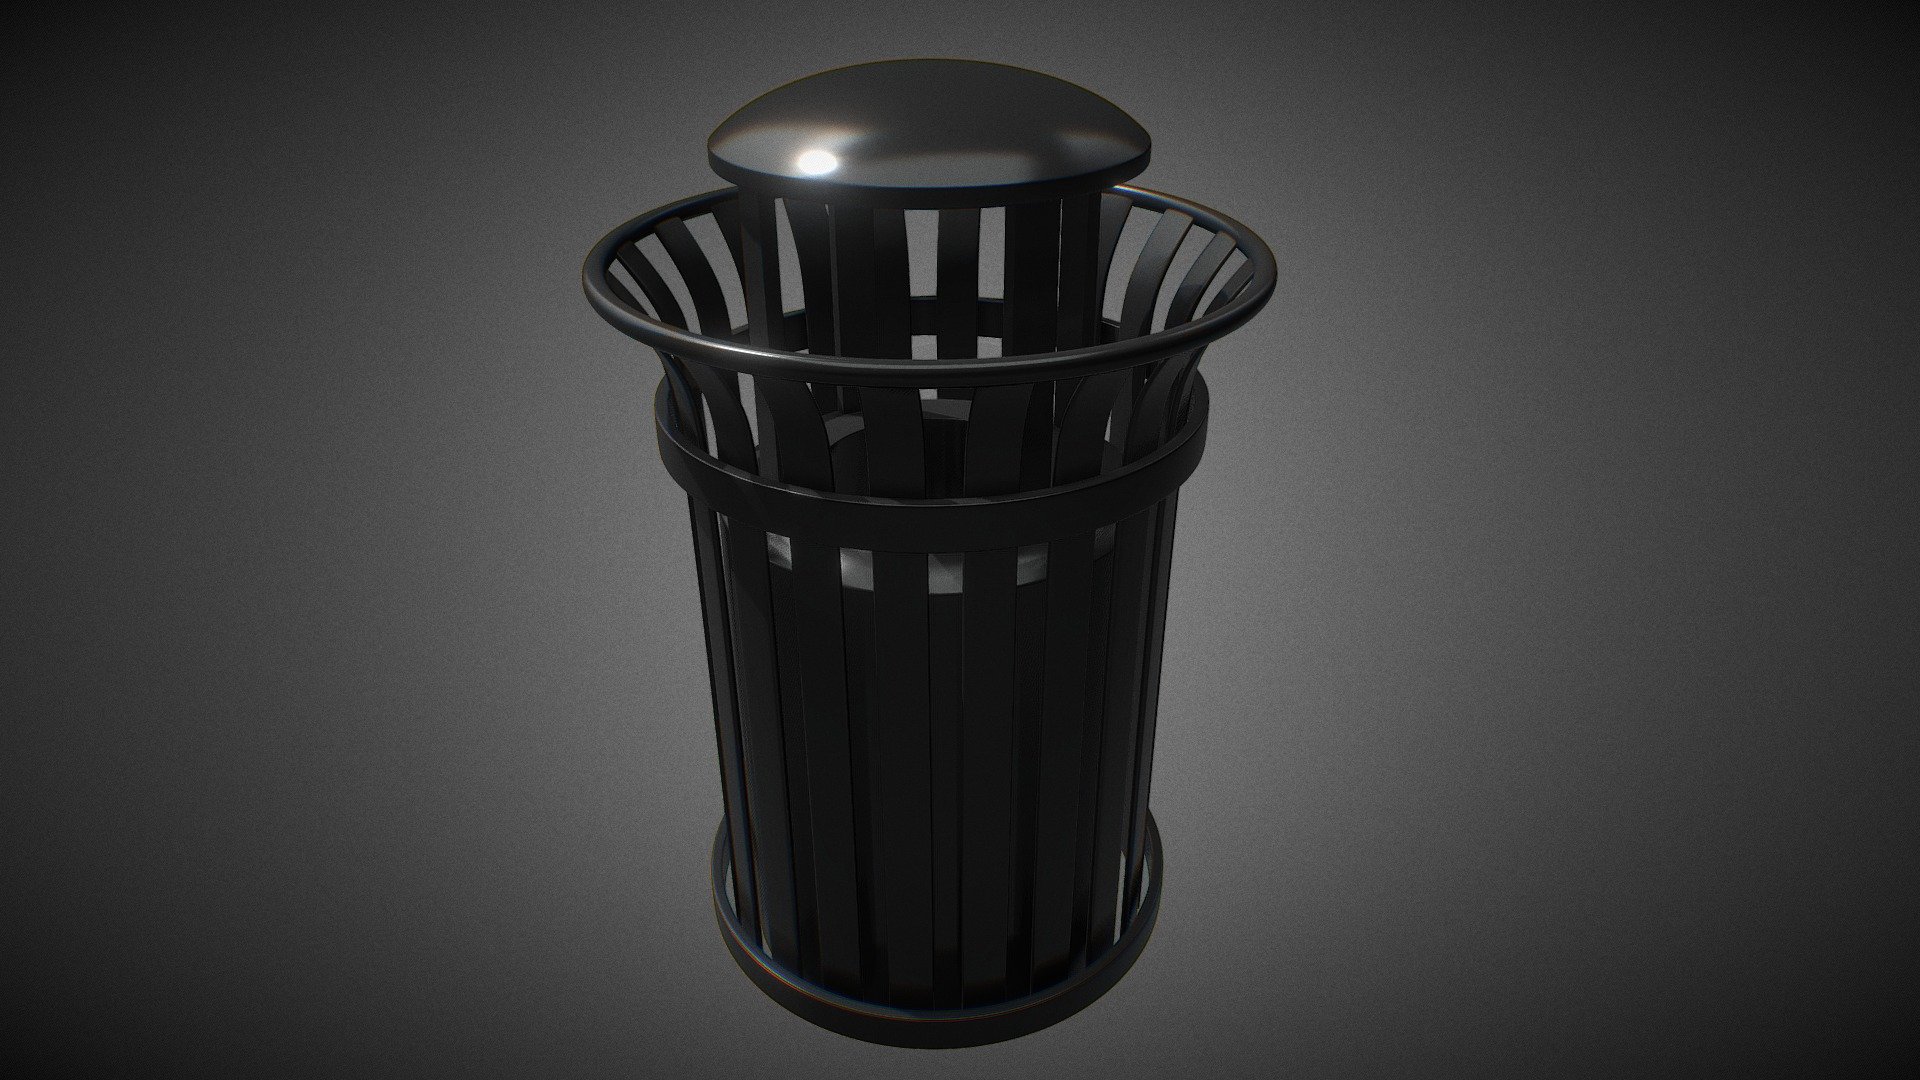 City trash bin asset made in blender - City Trash Can - Download Free 3D model by _Tempus_ 3d model